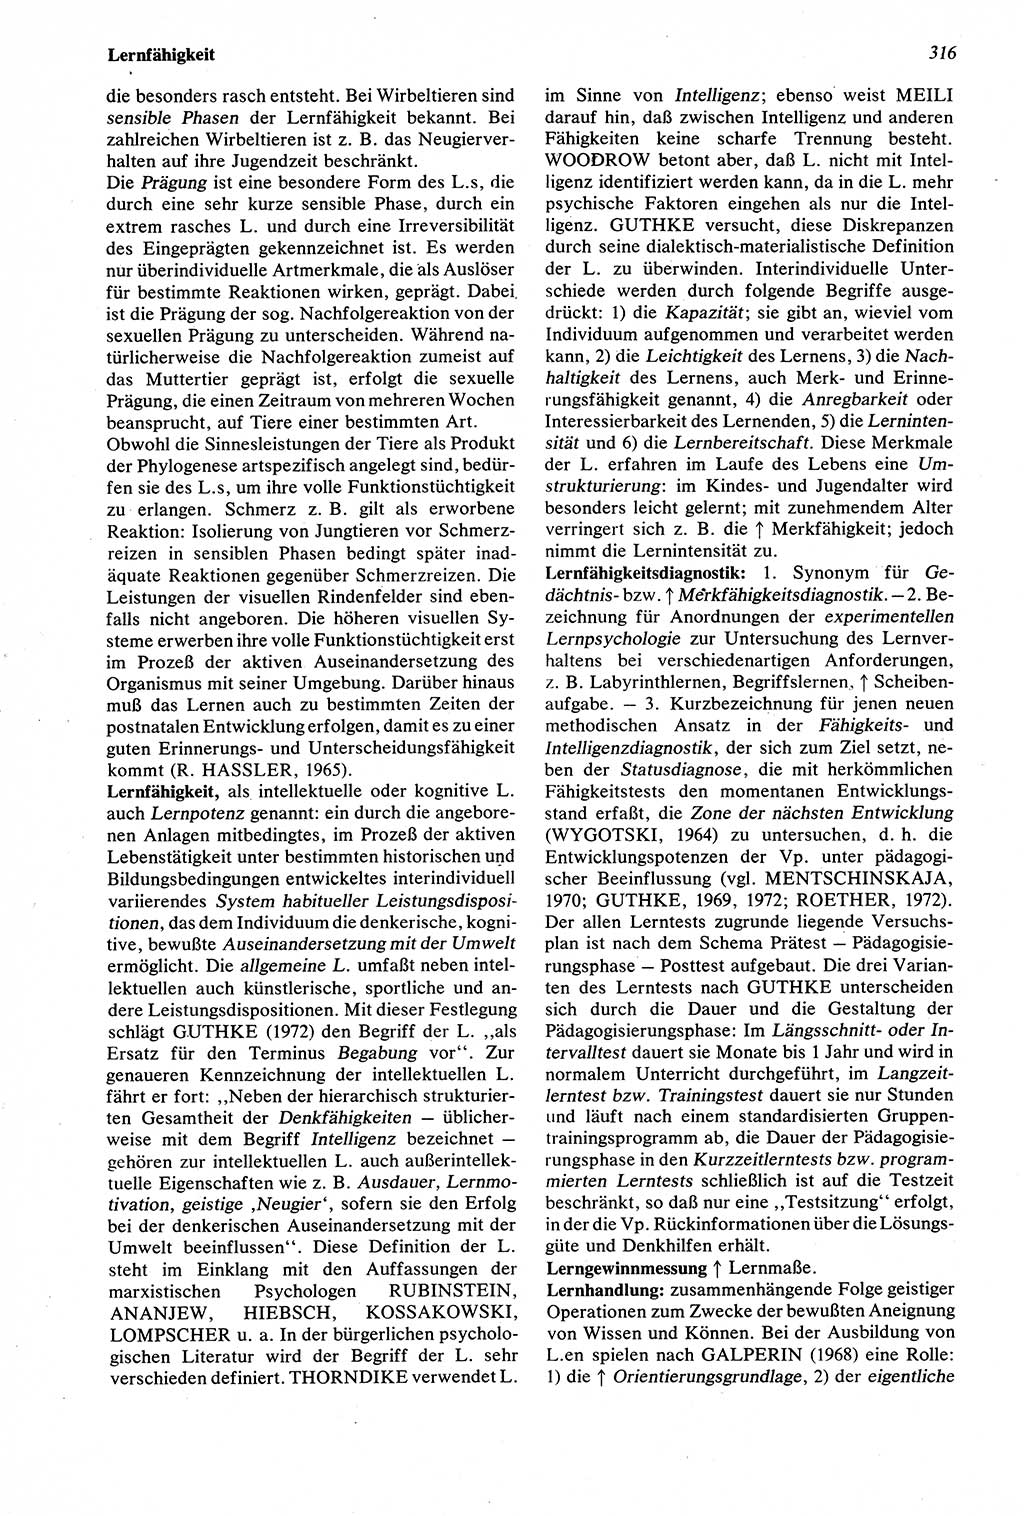 Wörterbuch der Psychologie [Deutsche Demokratische Republik (DDR)] 1976, Seite 316 (Wb. Psych. DDR 1976, S. 316)